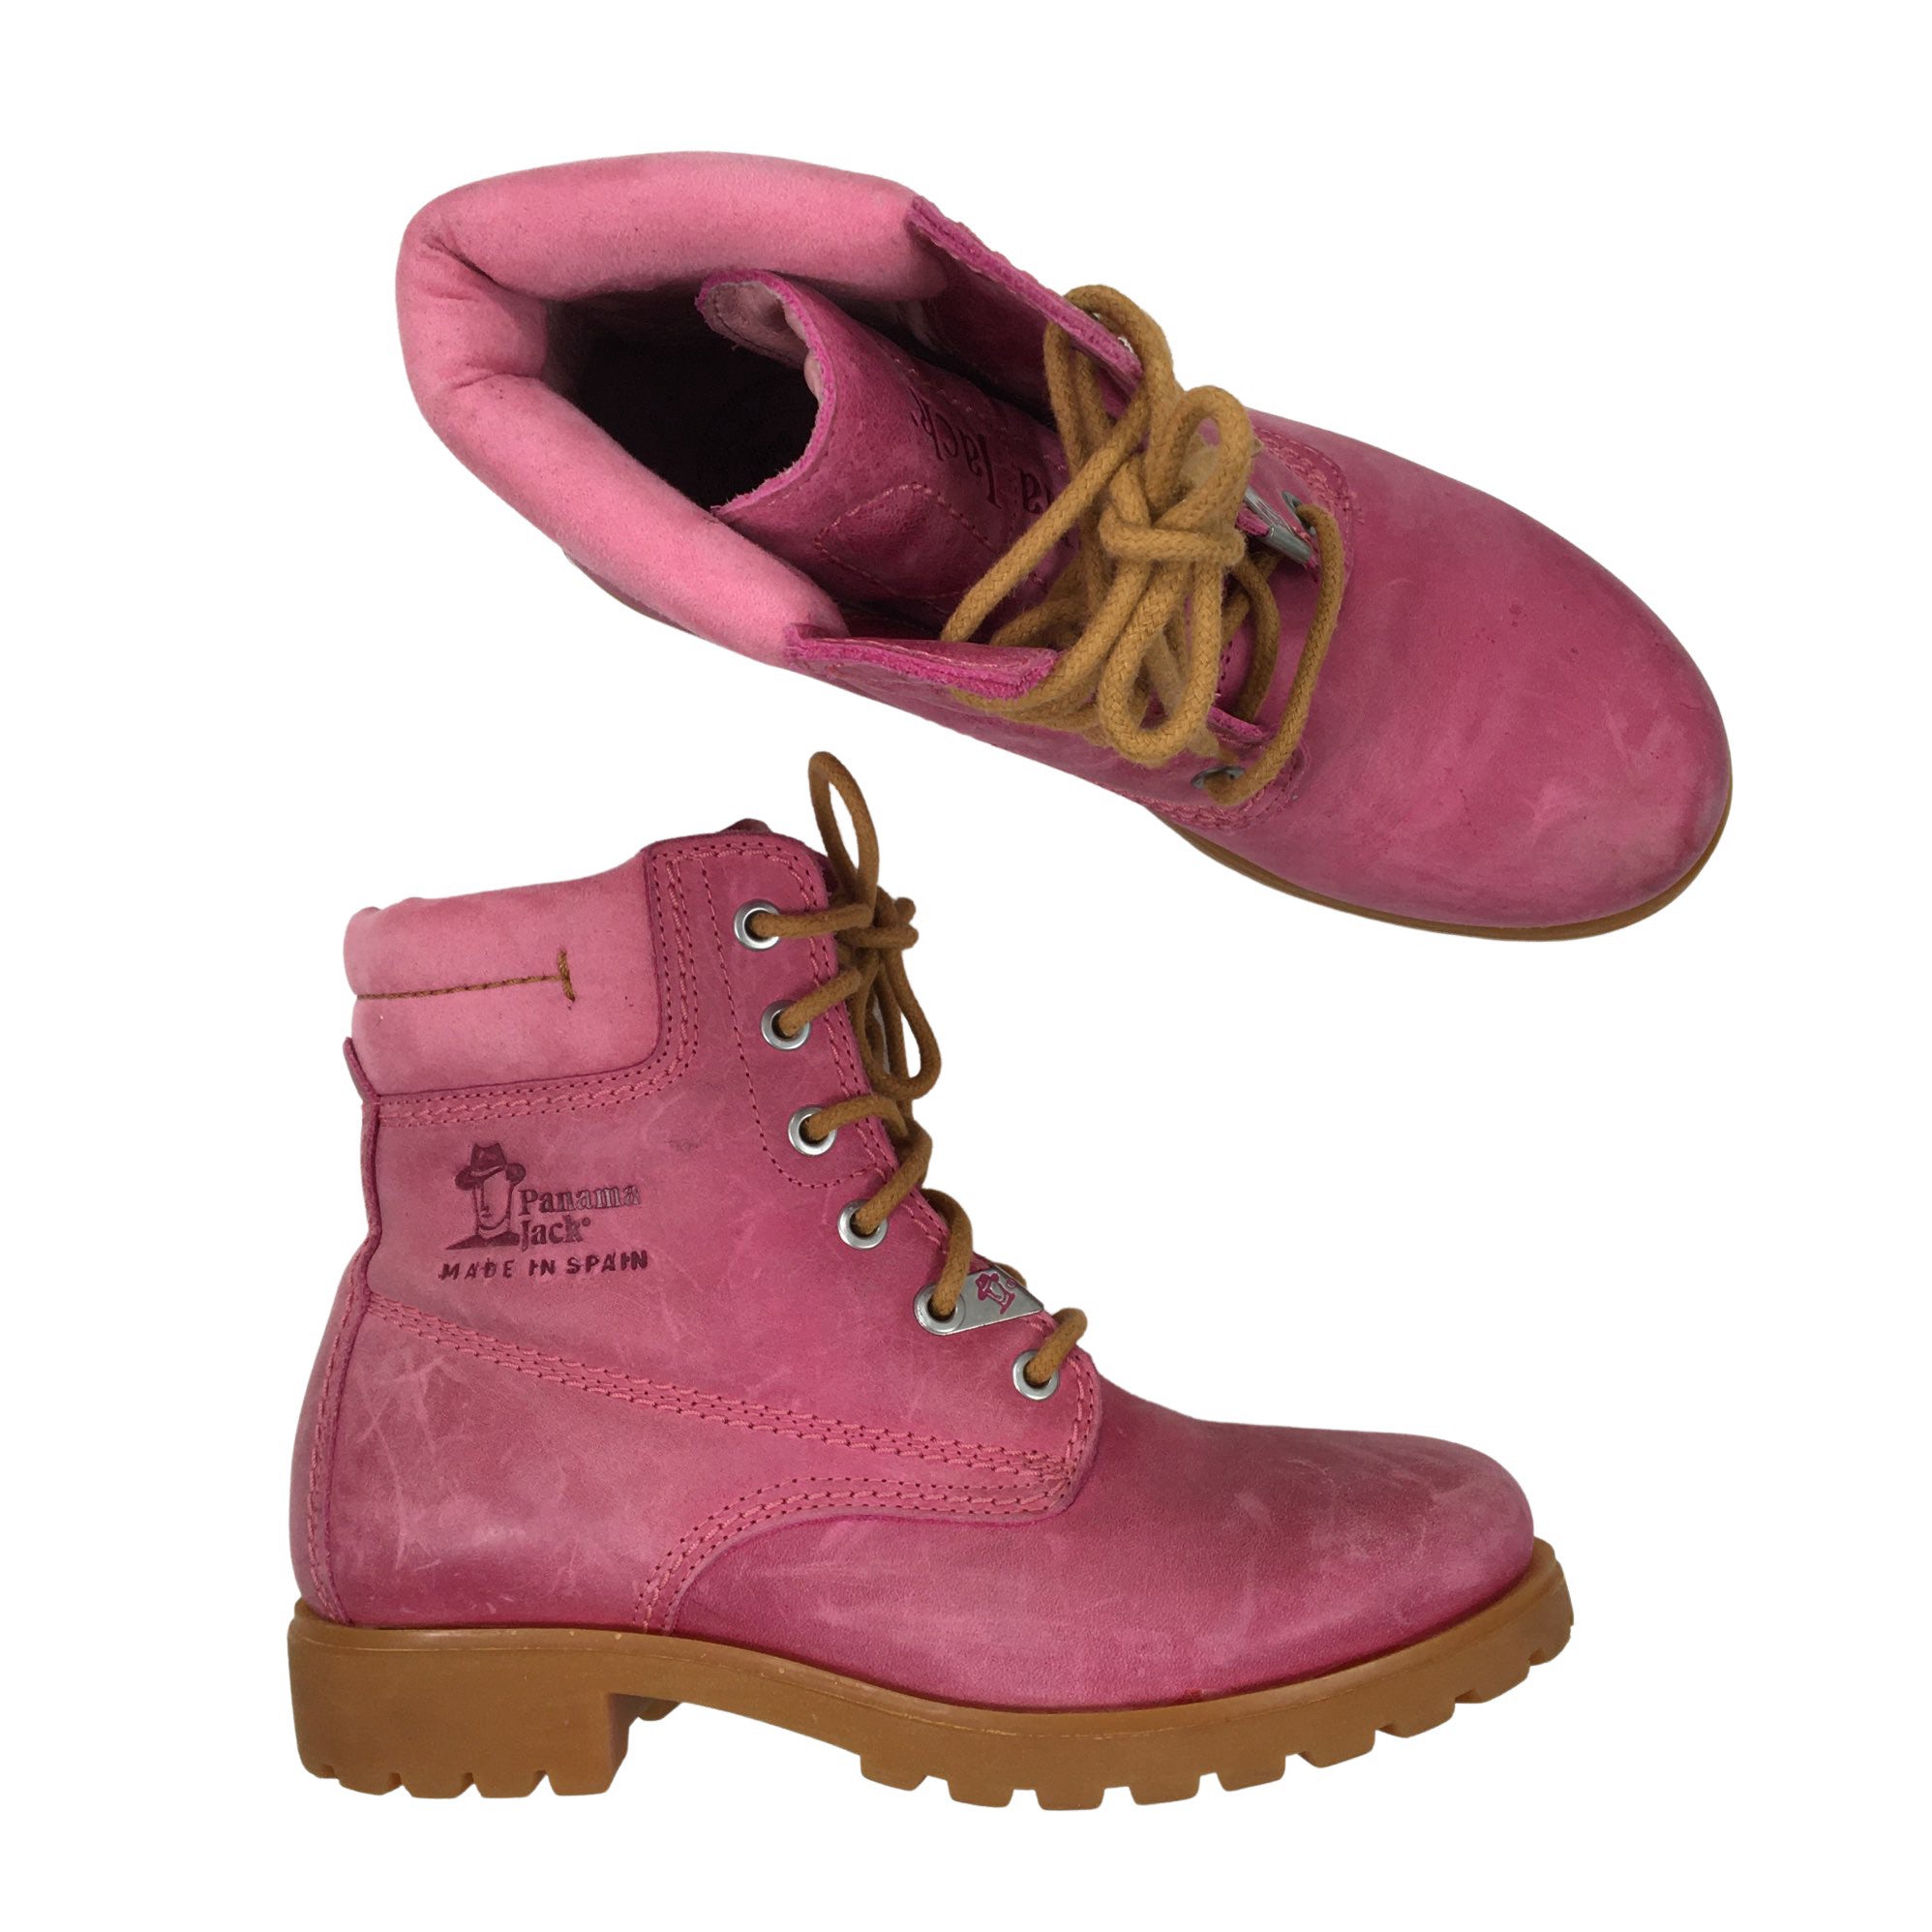 Janice Waar Broer Women's Panama Jack Ankle boots, size 36 (Pink) | Emmy